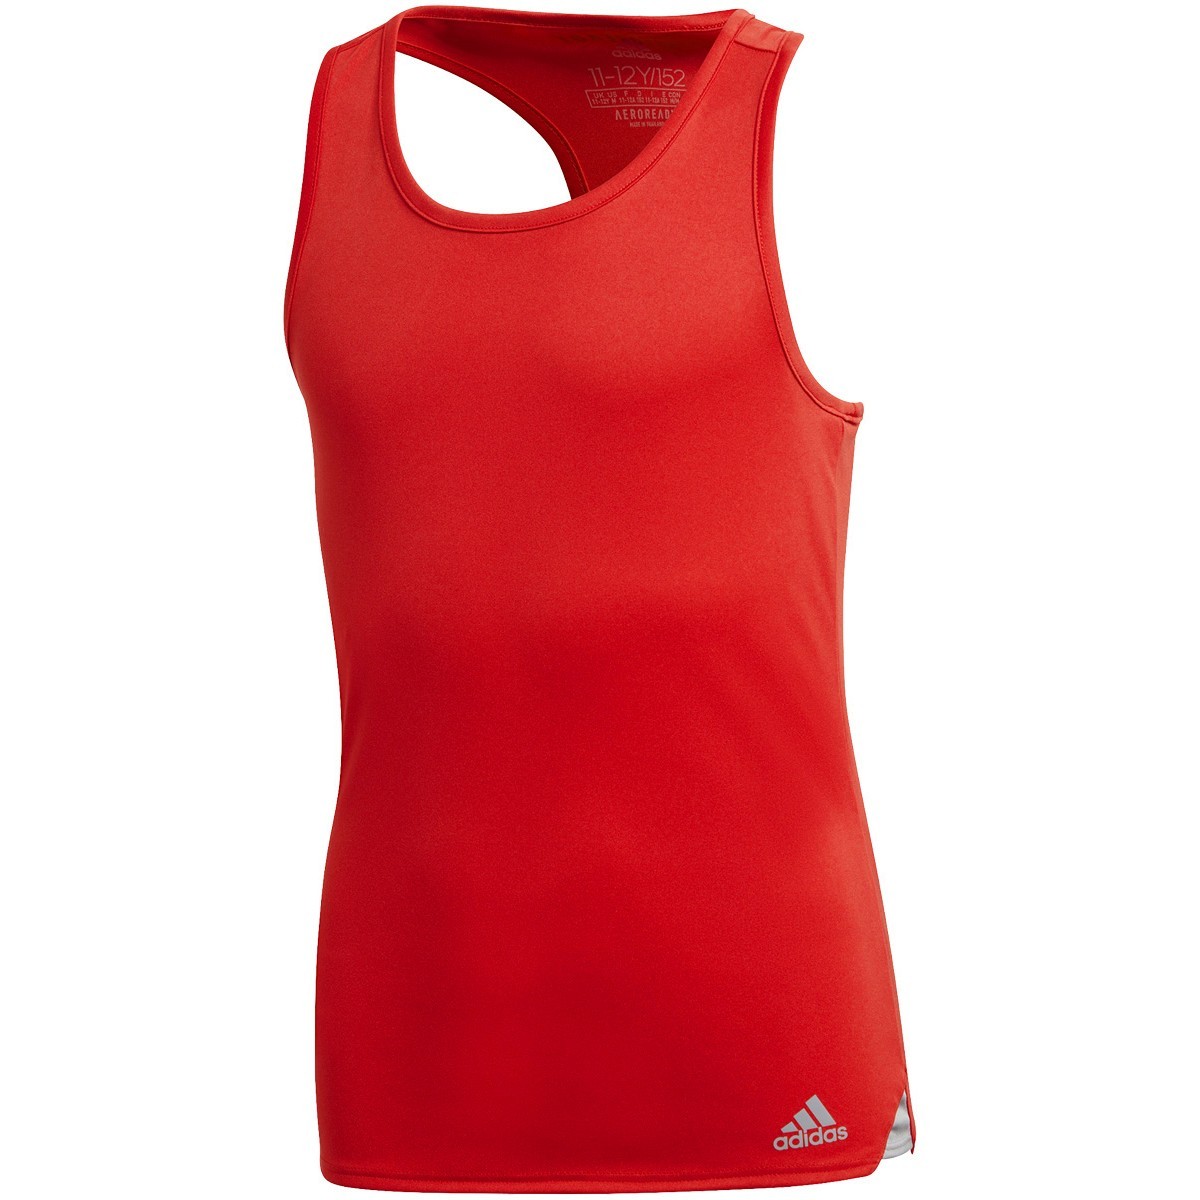 Теннисная майка детская Adidas Club Tank Top red